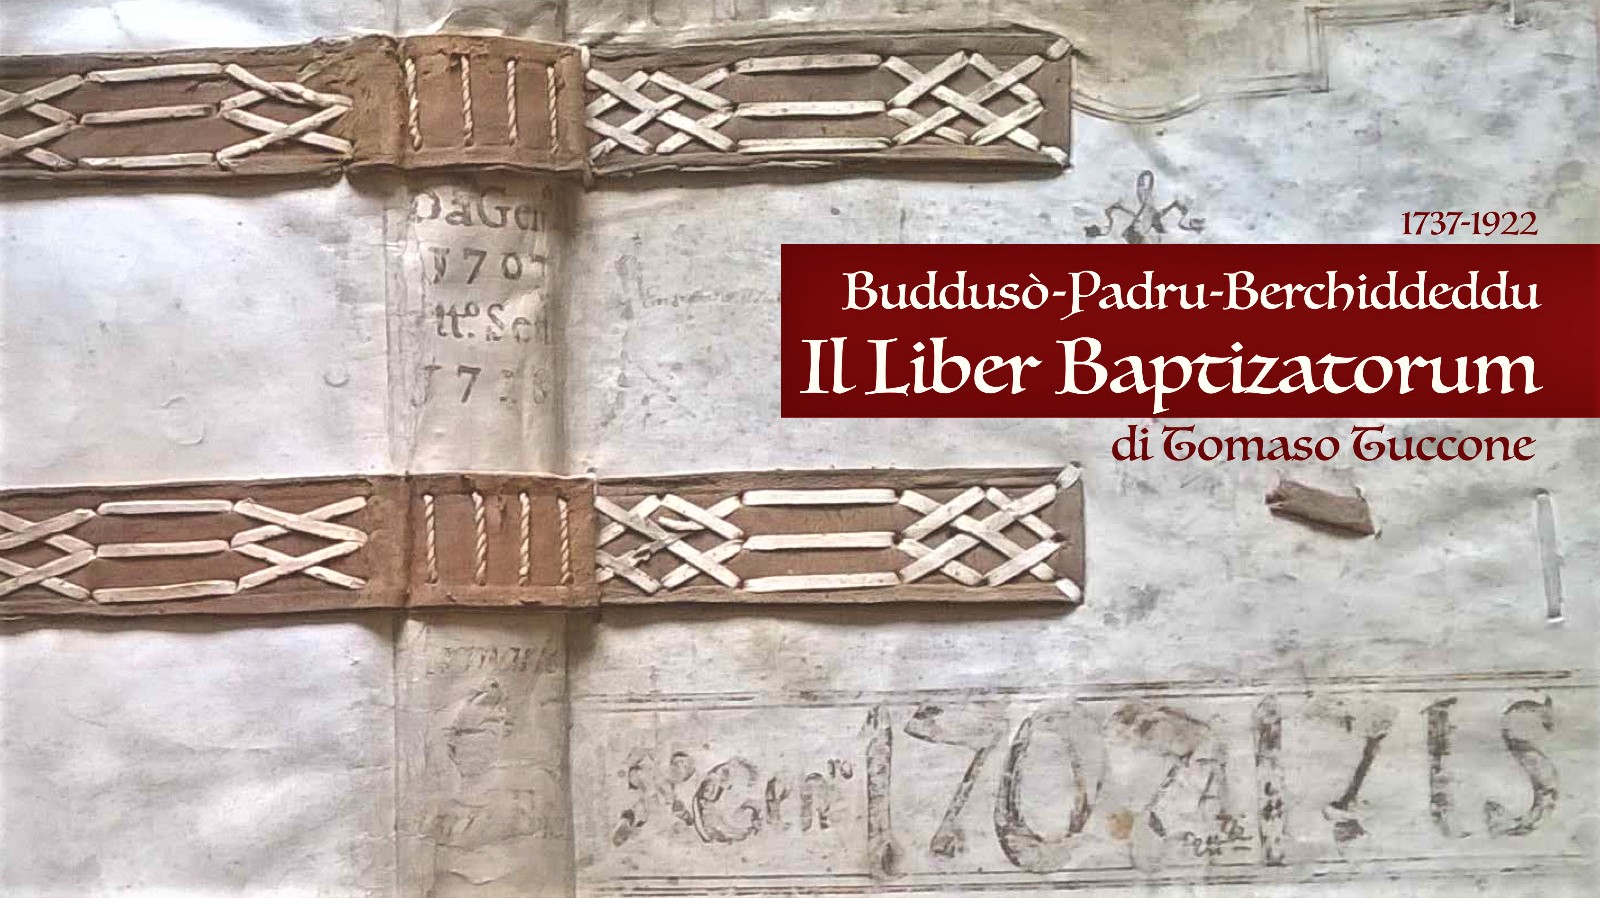 Buddusò, Padru e Berchiddeddu: in due tomi 200 anni di vita delle comunità